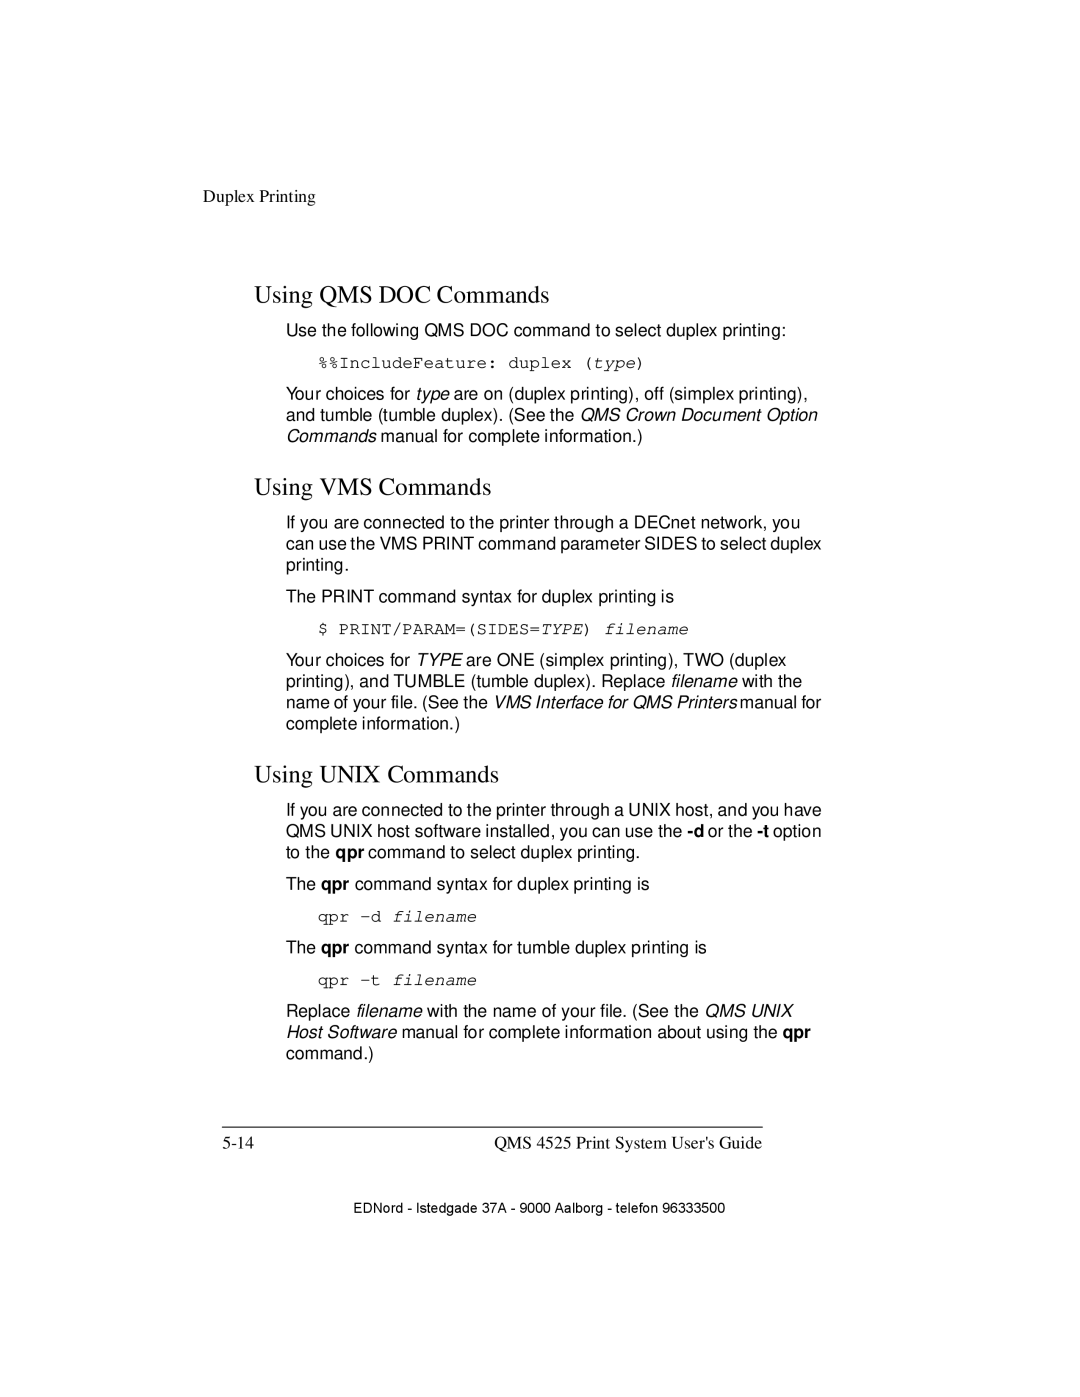 IBM QMS 4525 manual Using QMS DOC Commands, Using VMS Commands, Using UNIX Commands, qpr -d filename, qpr -t filename 